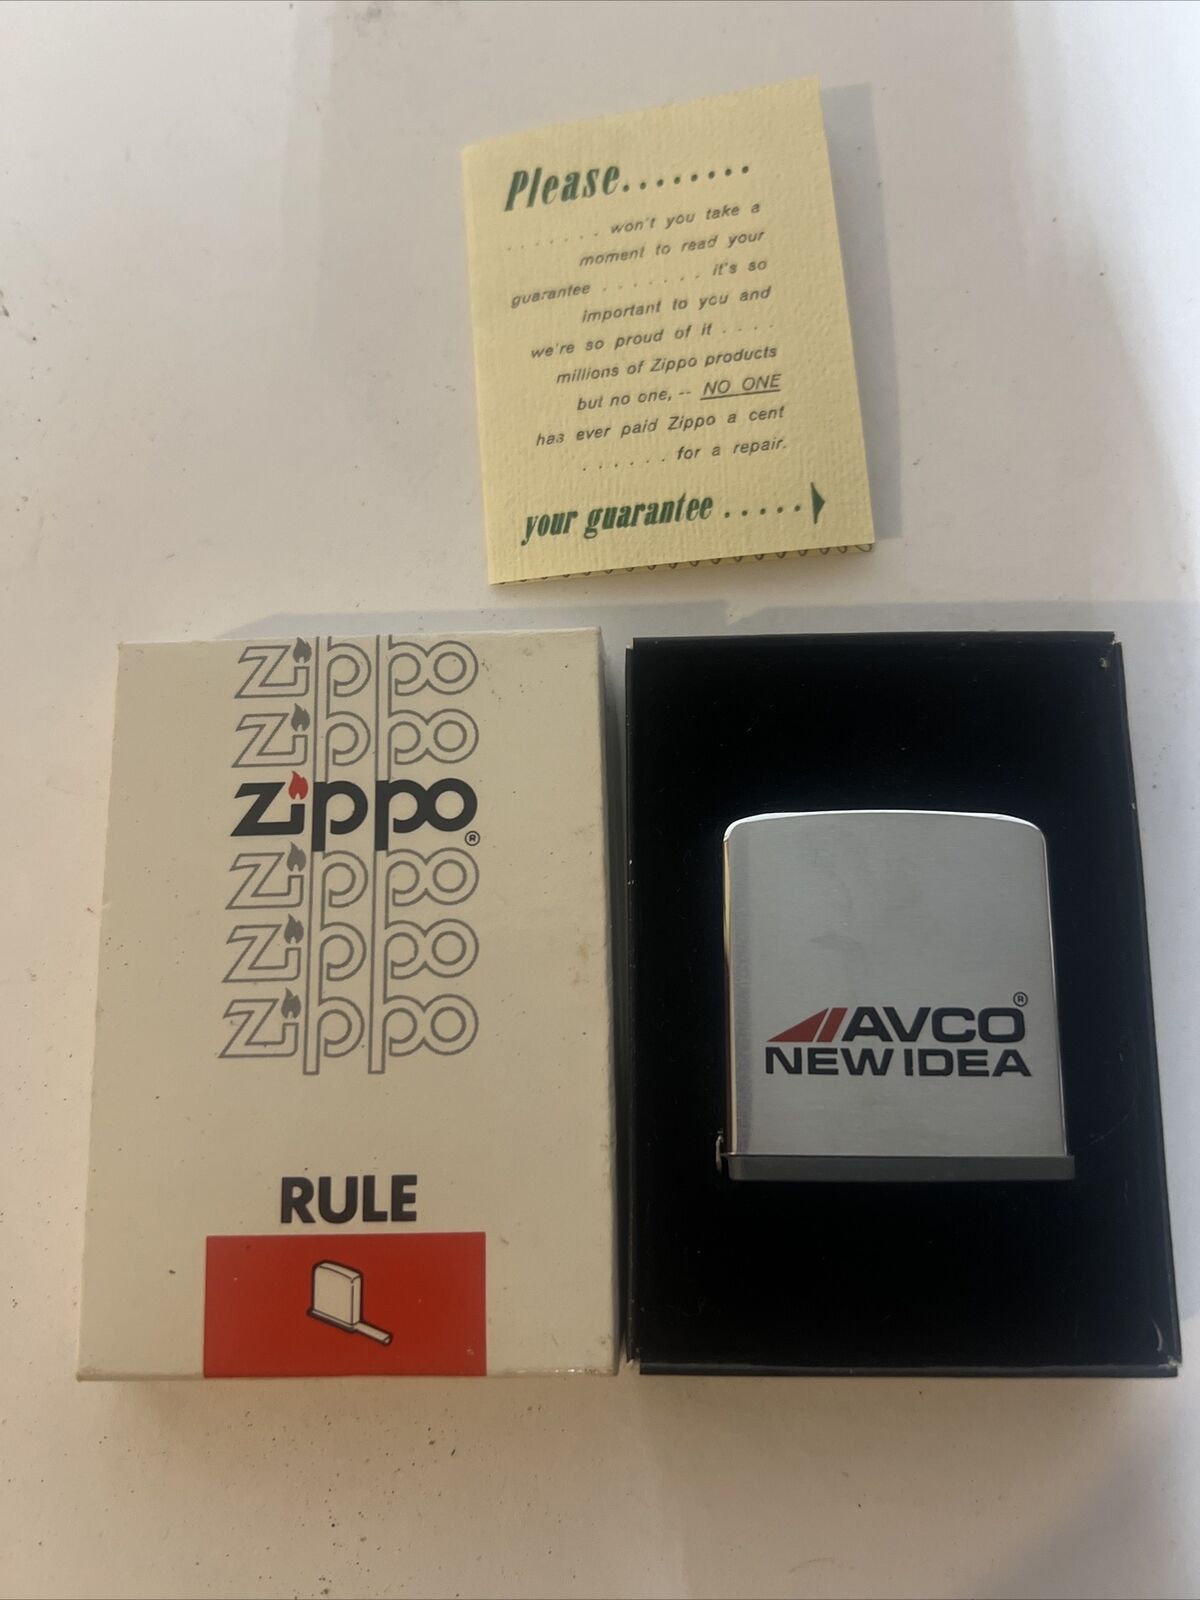 Avco New Idea Zippo Rule No. 6260 Ruler Tape Measure